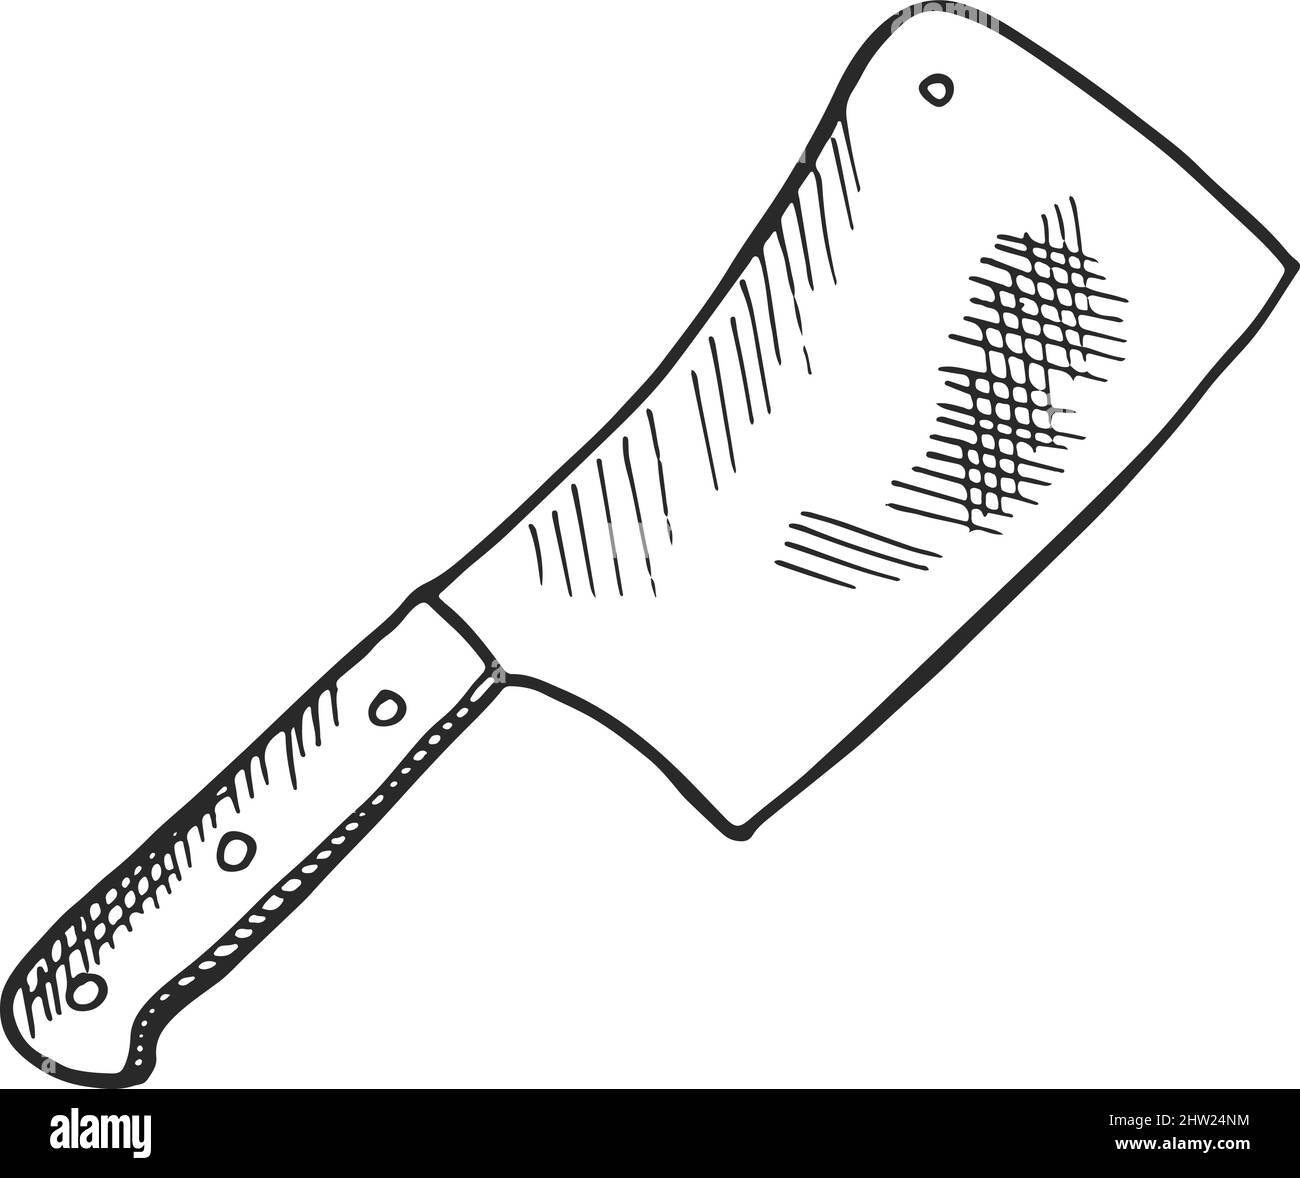 Butcher knife. Big knife for meat. Vector illustration Stock